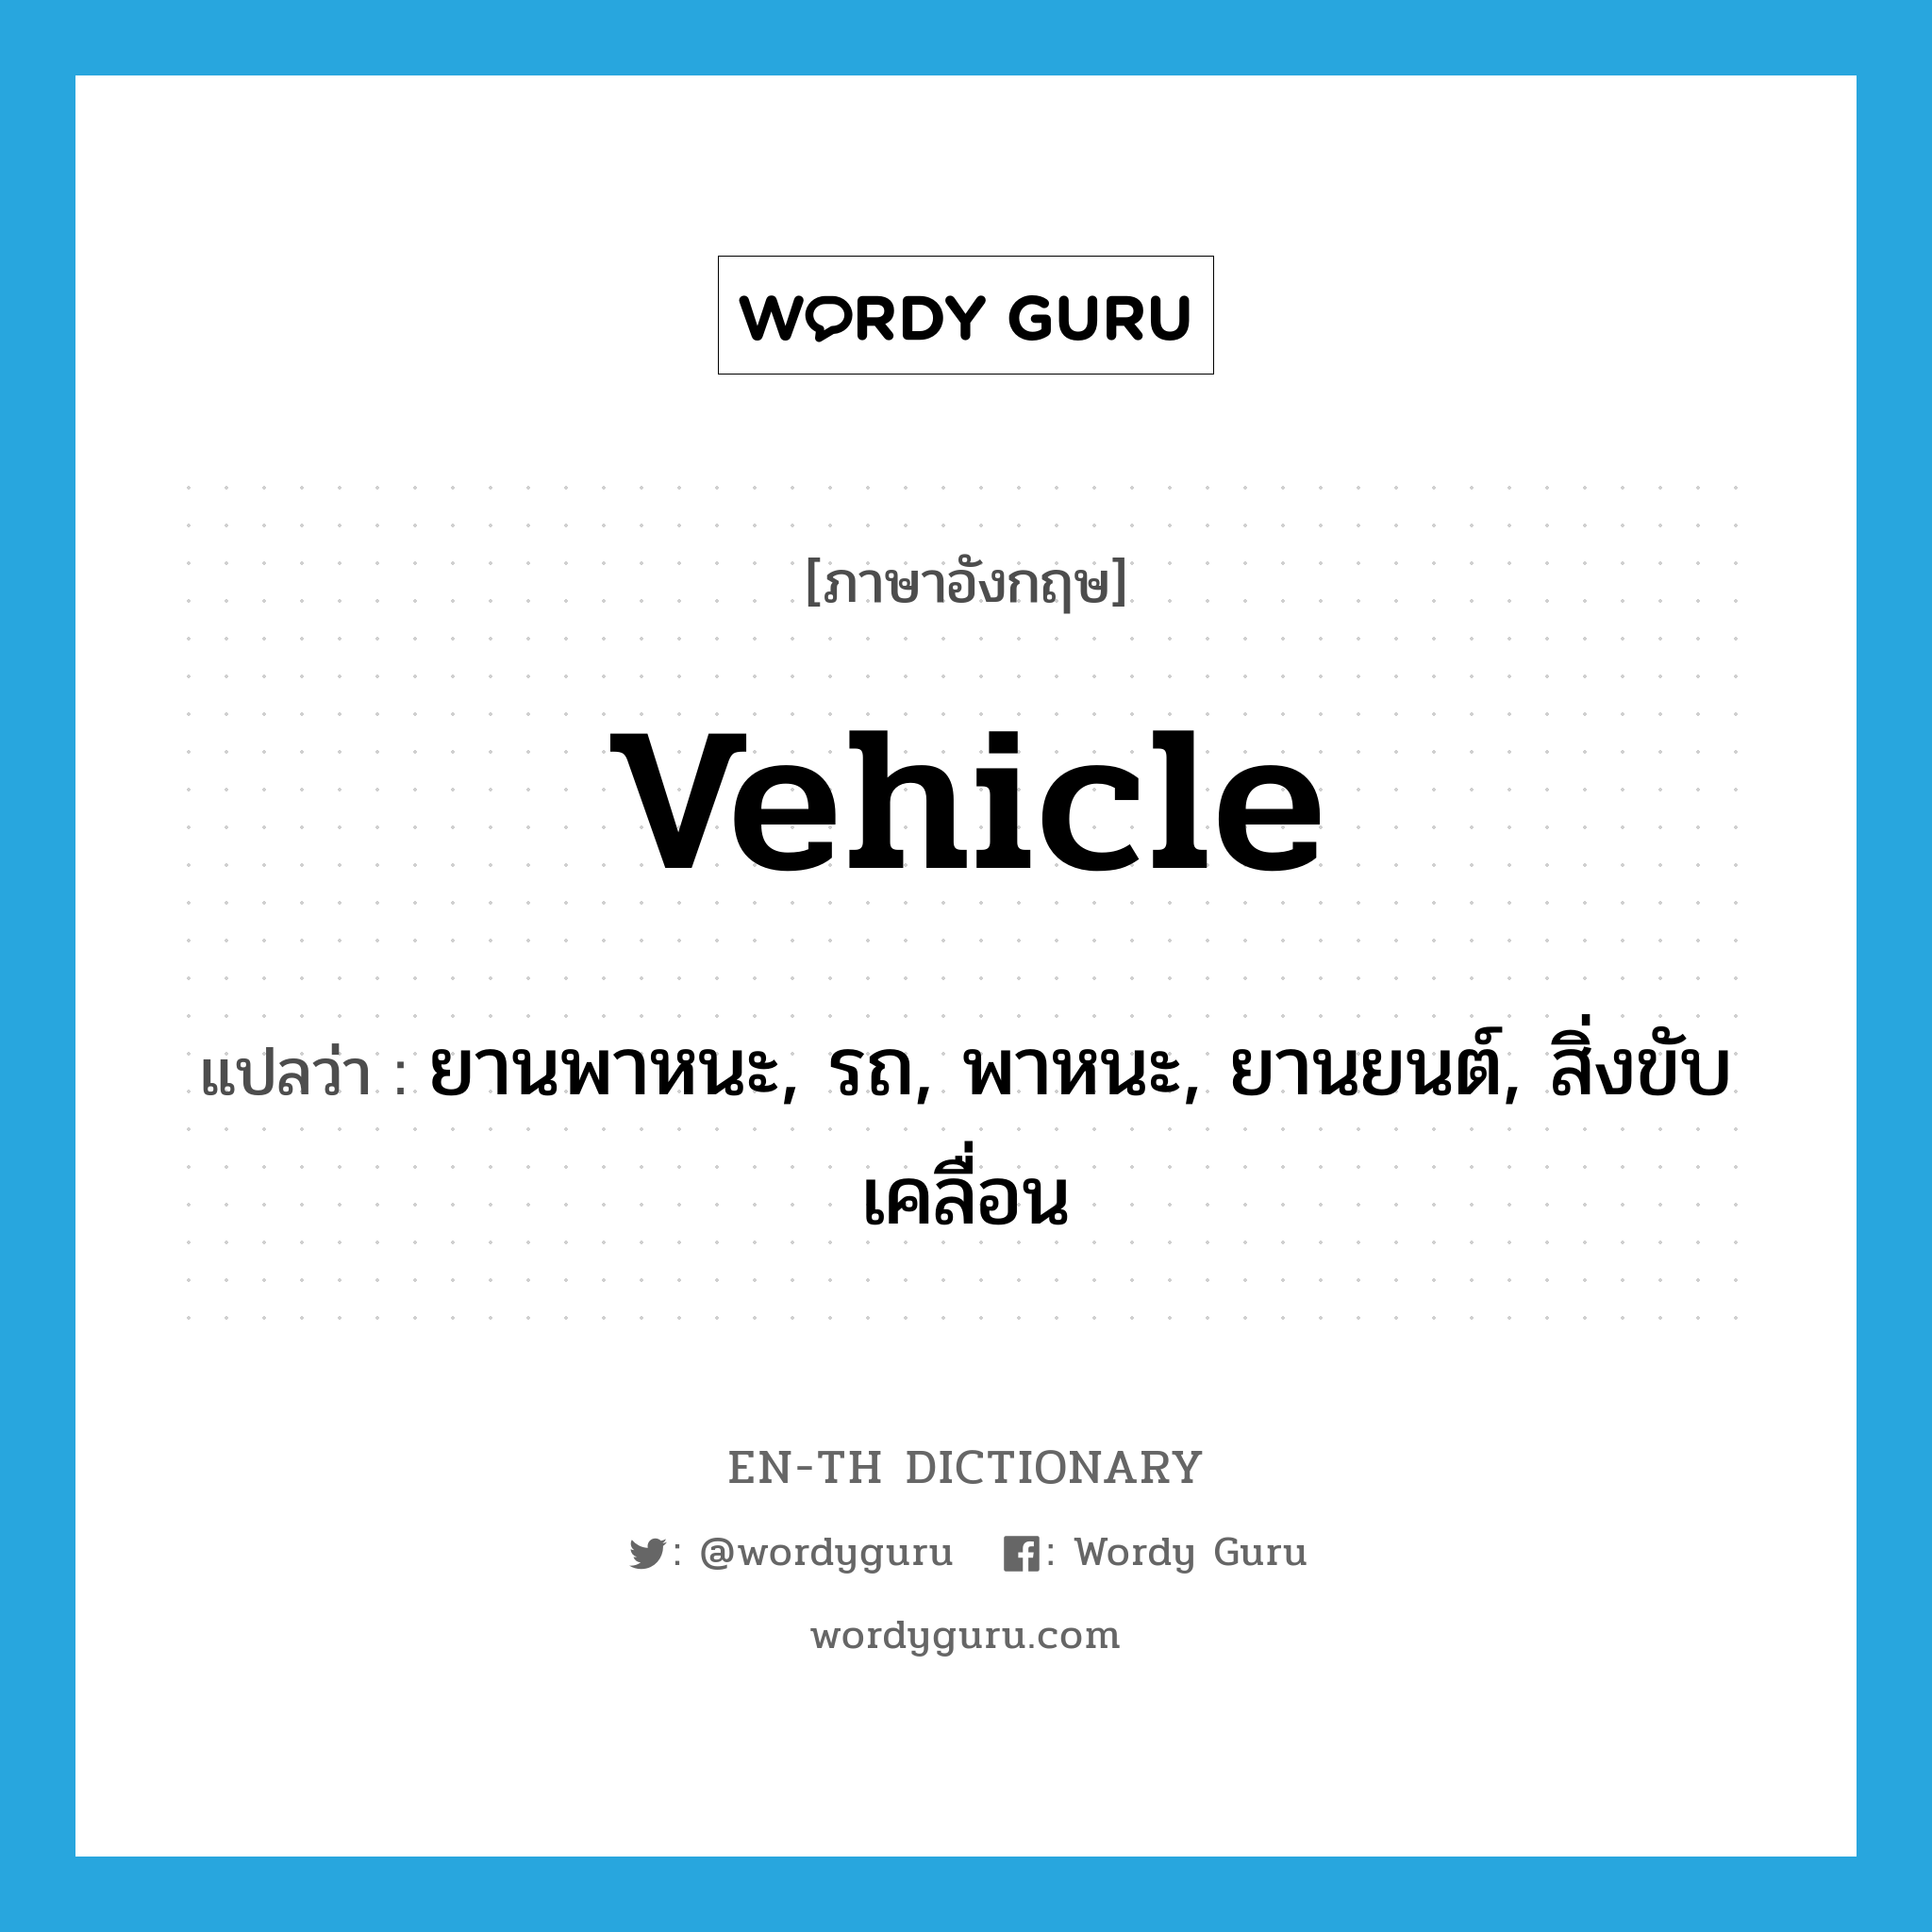 vehicle แปลว่า?, คำศัพท์ภาษาอังกฤษ vehicle แปลว่า ยานพาหนะ, รถ, พาหนะ, ยานยนต์, สิ่งขับเคลื่อน ประเภท N หมวด N